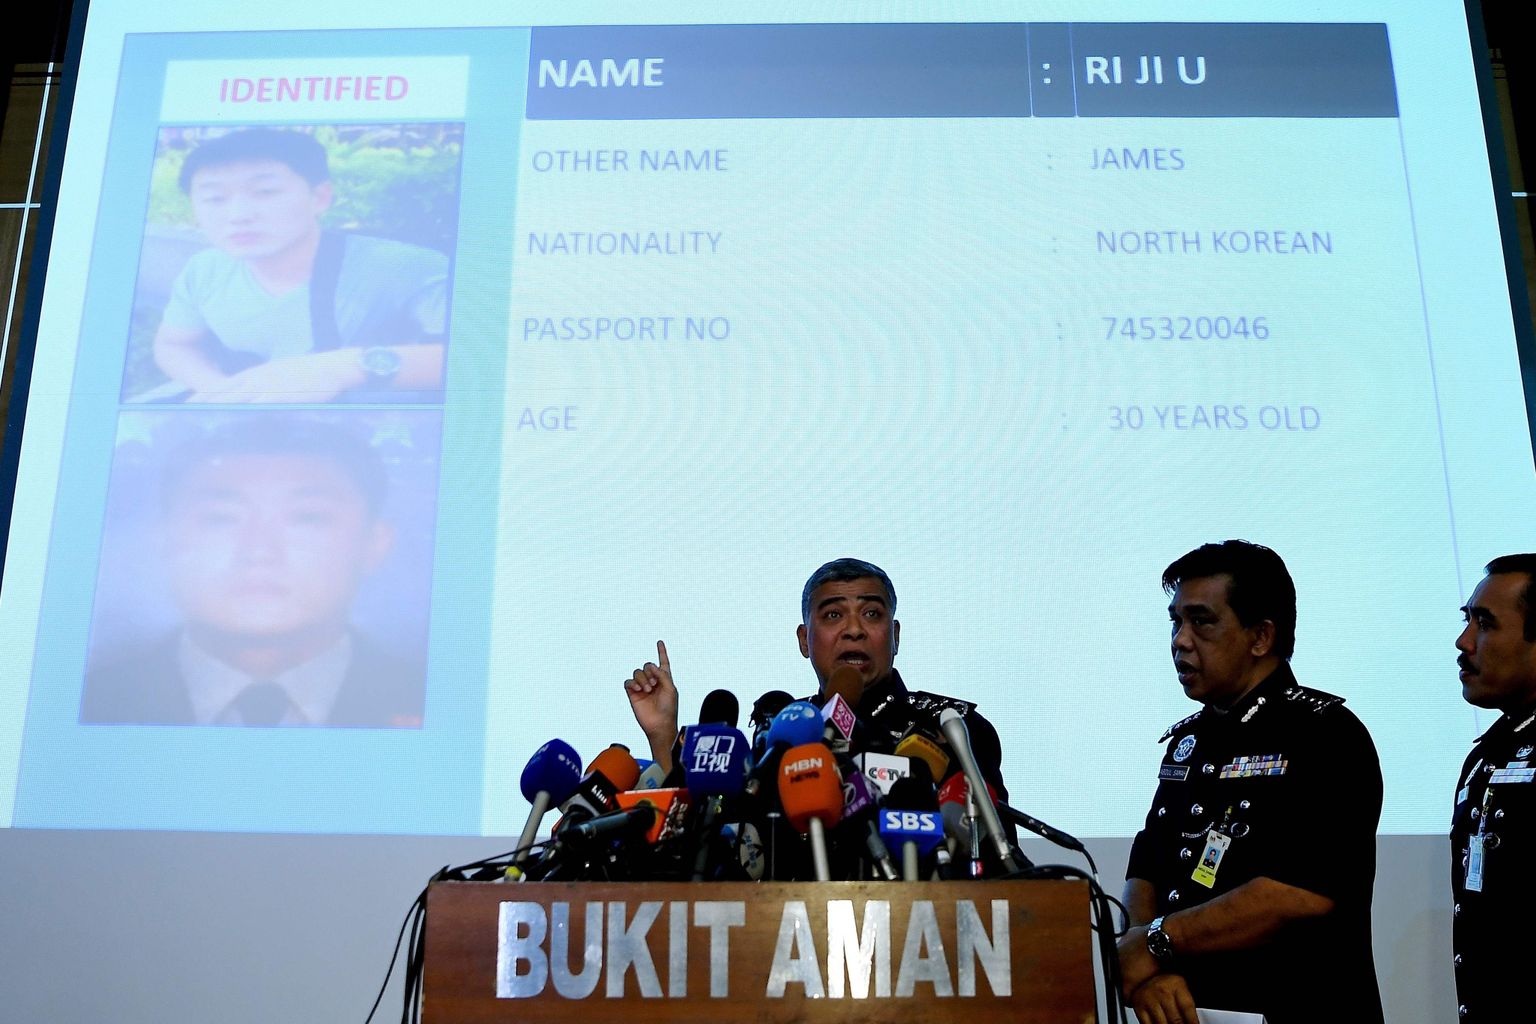 Malaisia politsejuht Khalid Abu Bakar näitab pressikonverentsil kahtlusaluste fotosid.